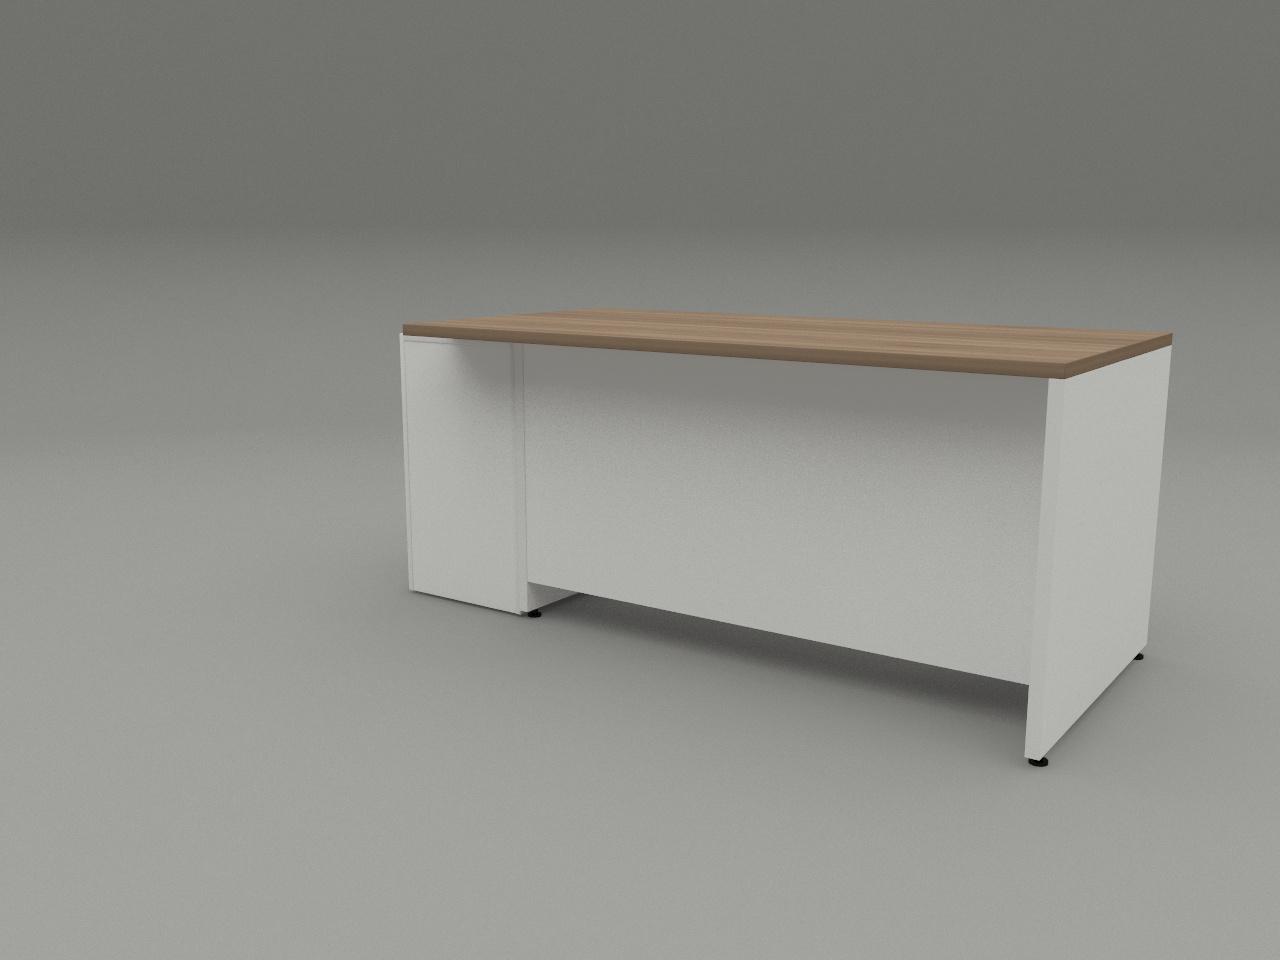 escritorio kuvolks 160 x 80 cm pedestal independiente con ruedas